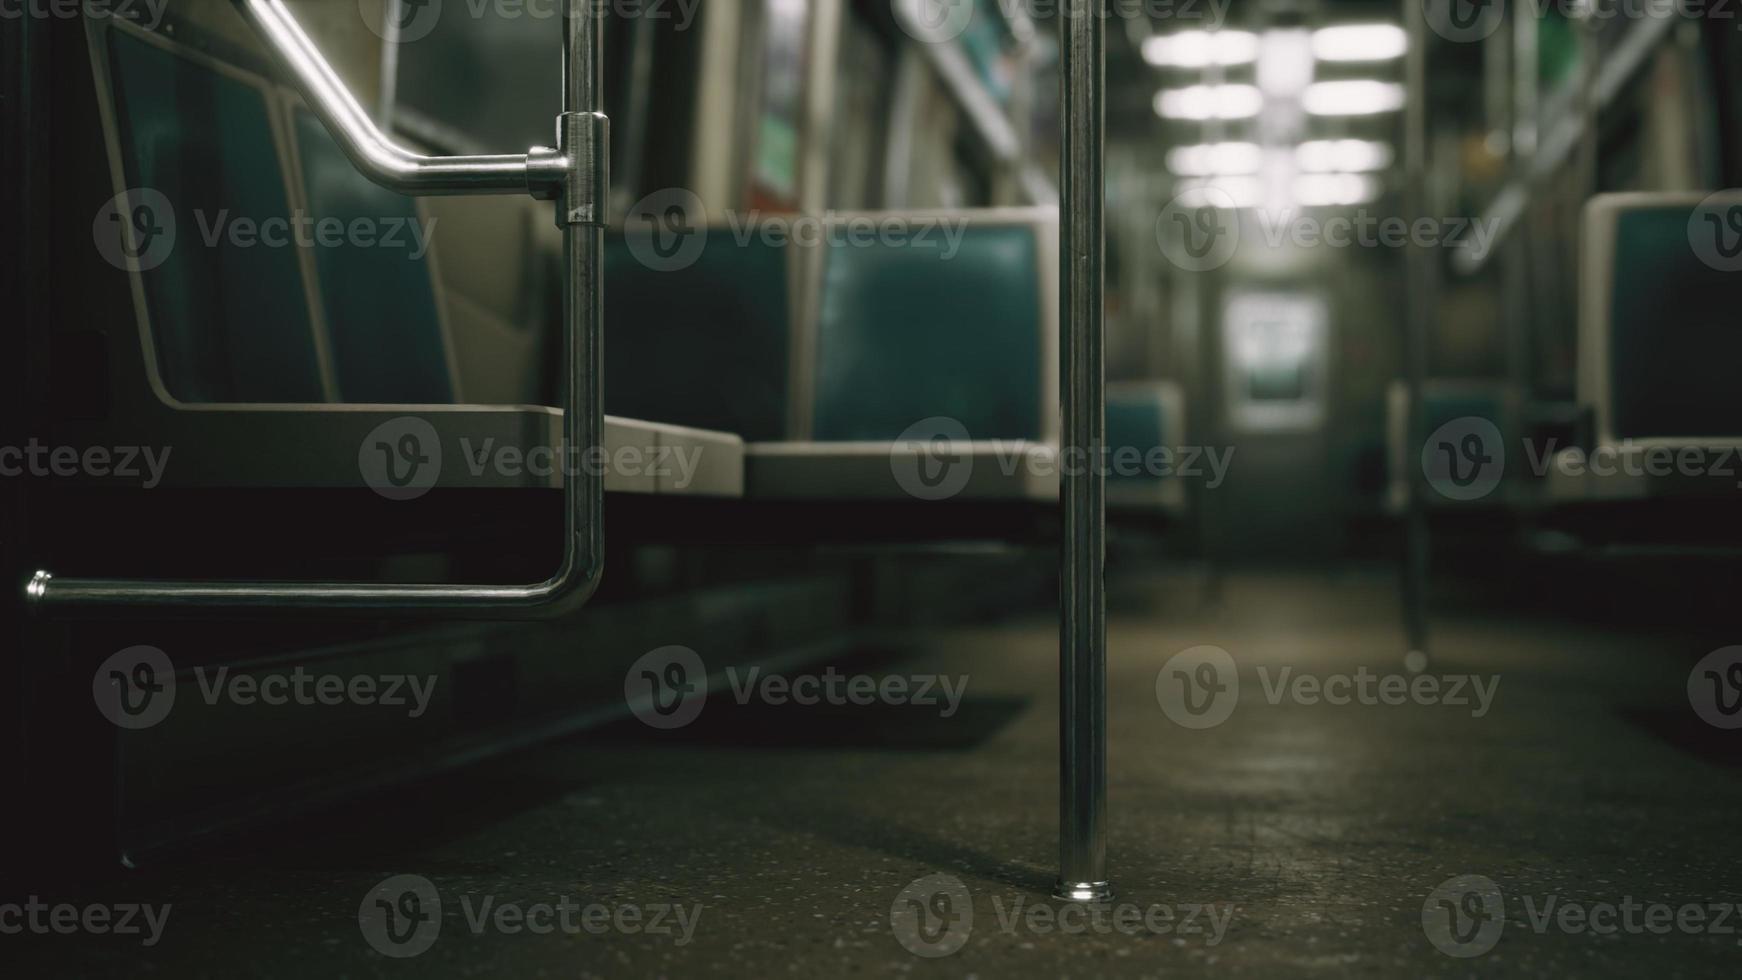 vagone della metropolitana negli Stati Uniti vuoto a causa dell'epidemia di coronavirus covid-19 foto